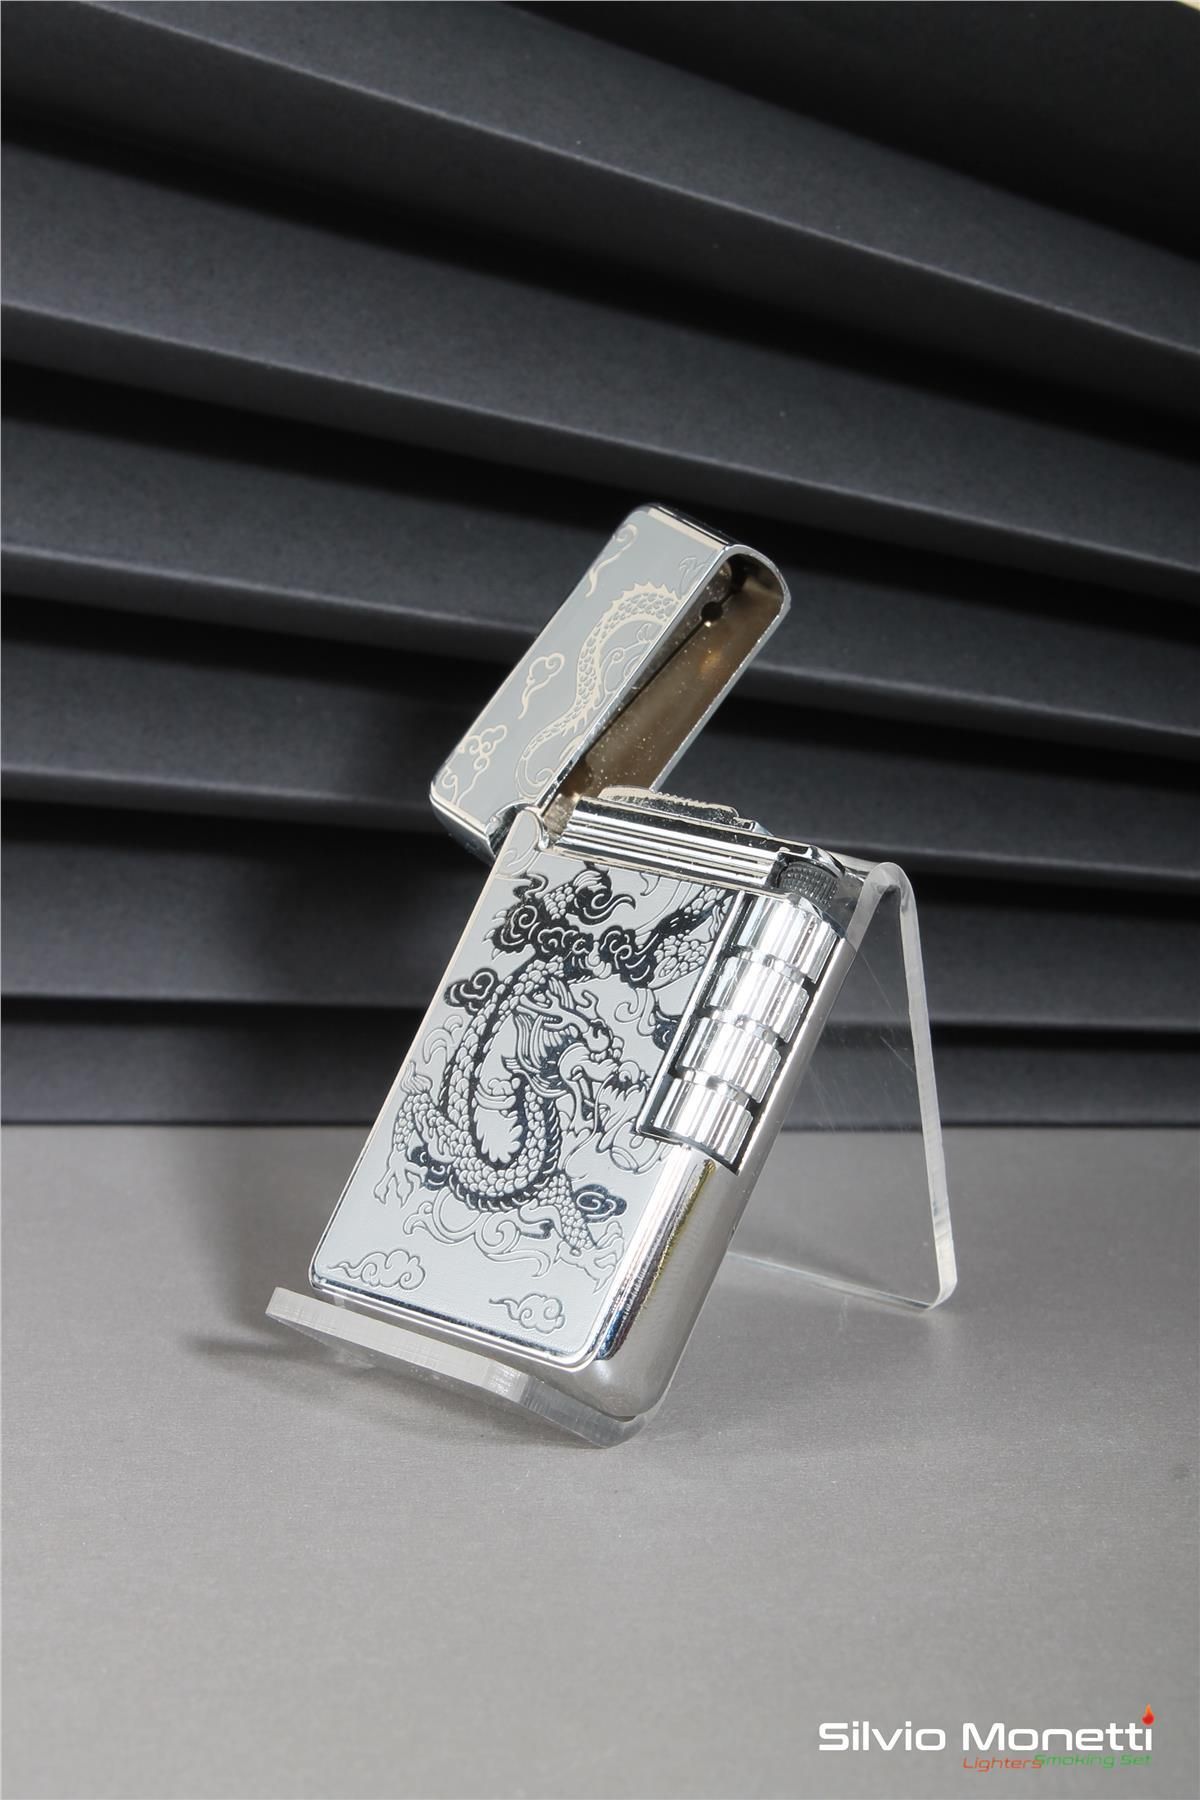 Silvio Monetti Gümüş Özel Tasarım Işlemeli Kapaklı Model Gazlı Çakmak 24csm813atr02